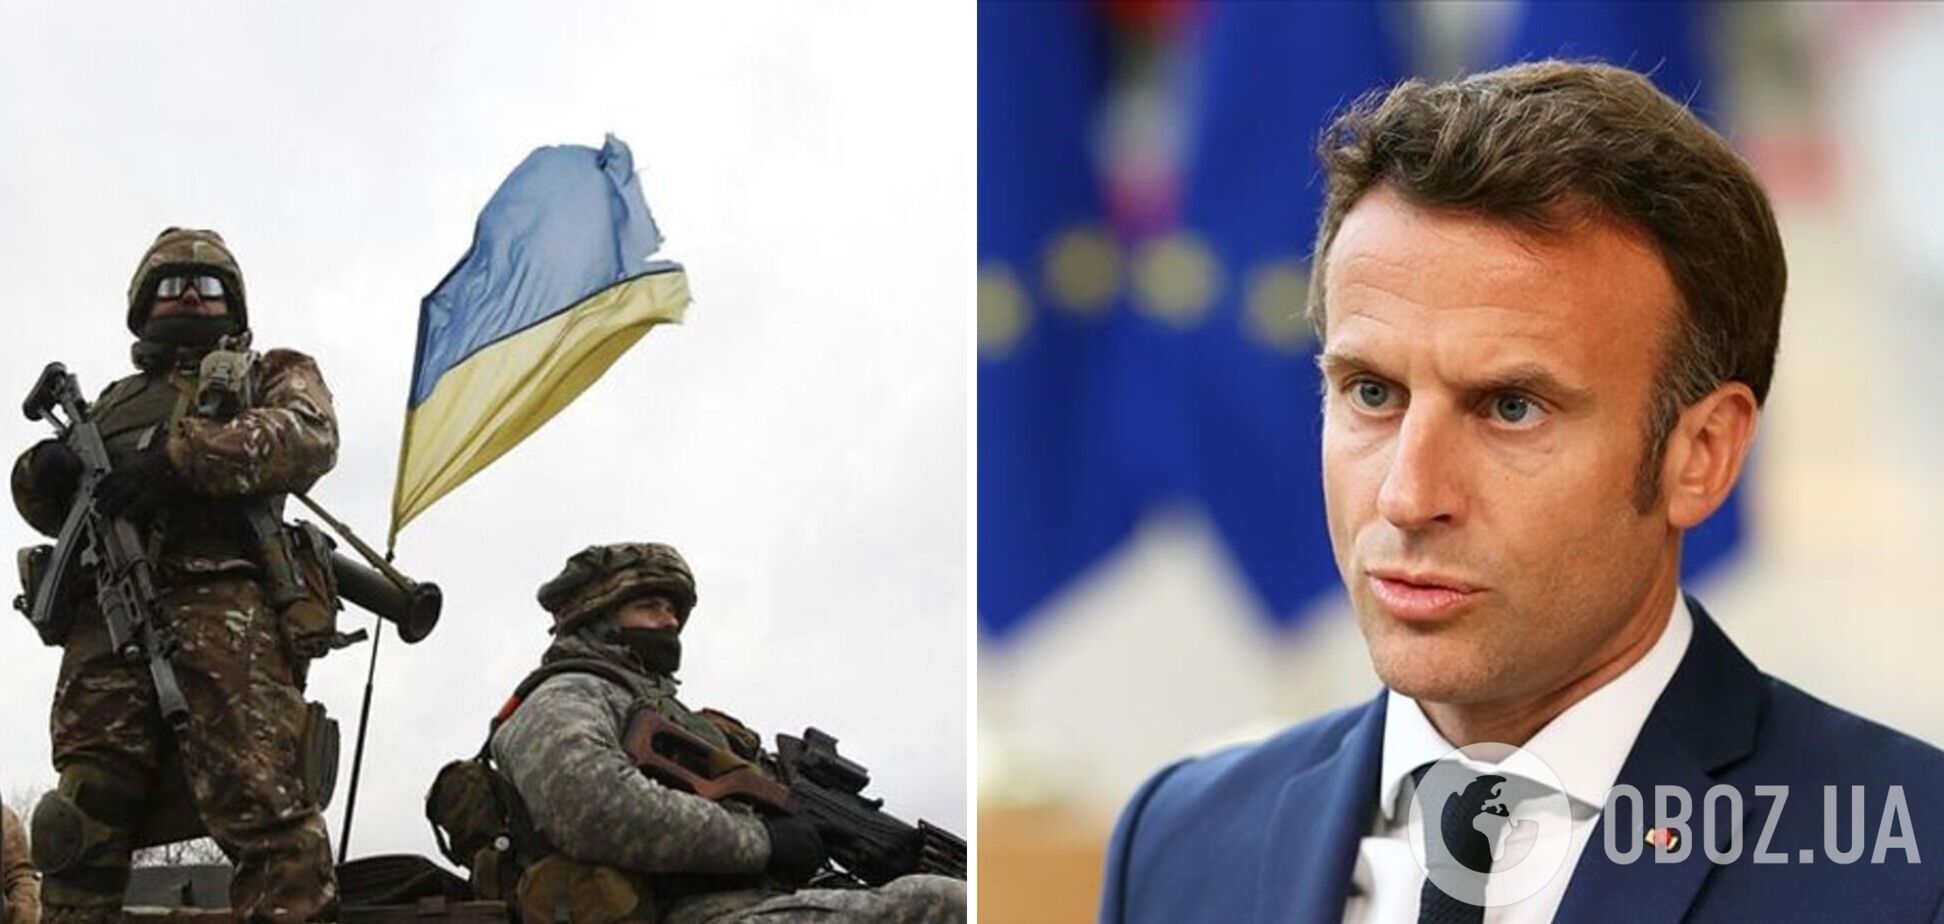 Запад поднимает ставки: натовские солдаты скоро могут появиться в Украине. Есть несколько вариантов, как они помогут